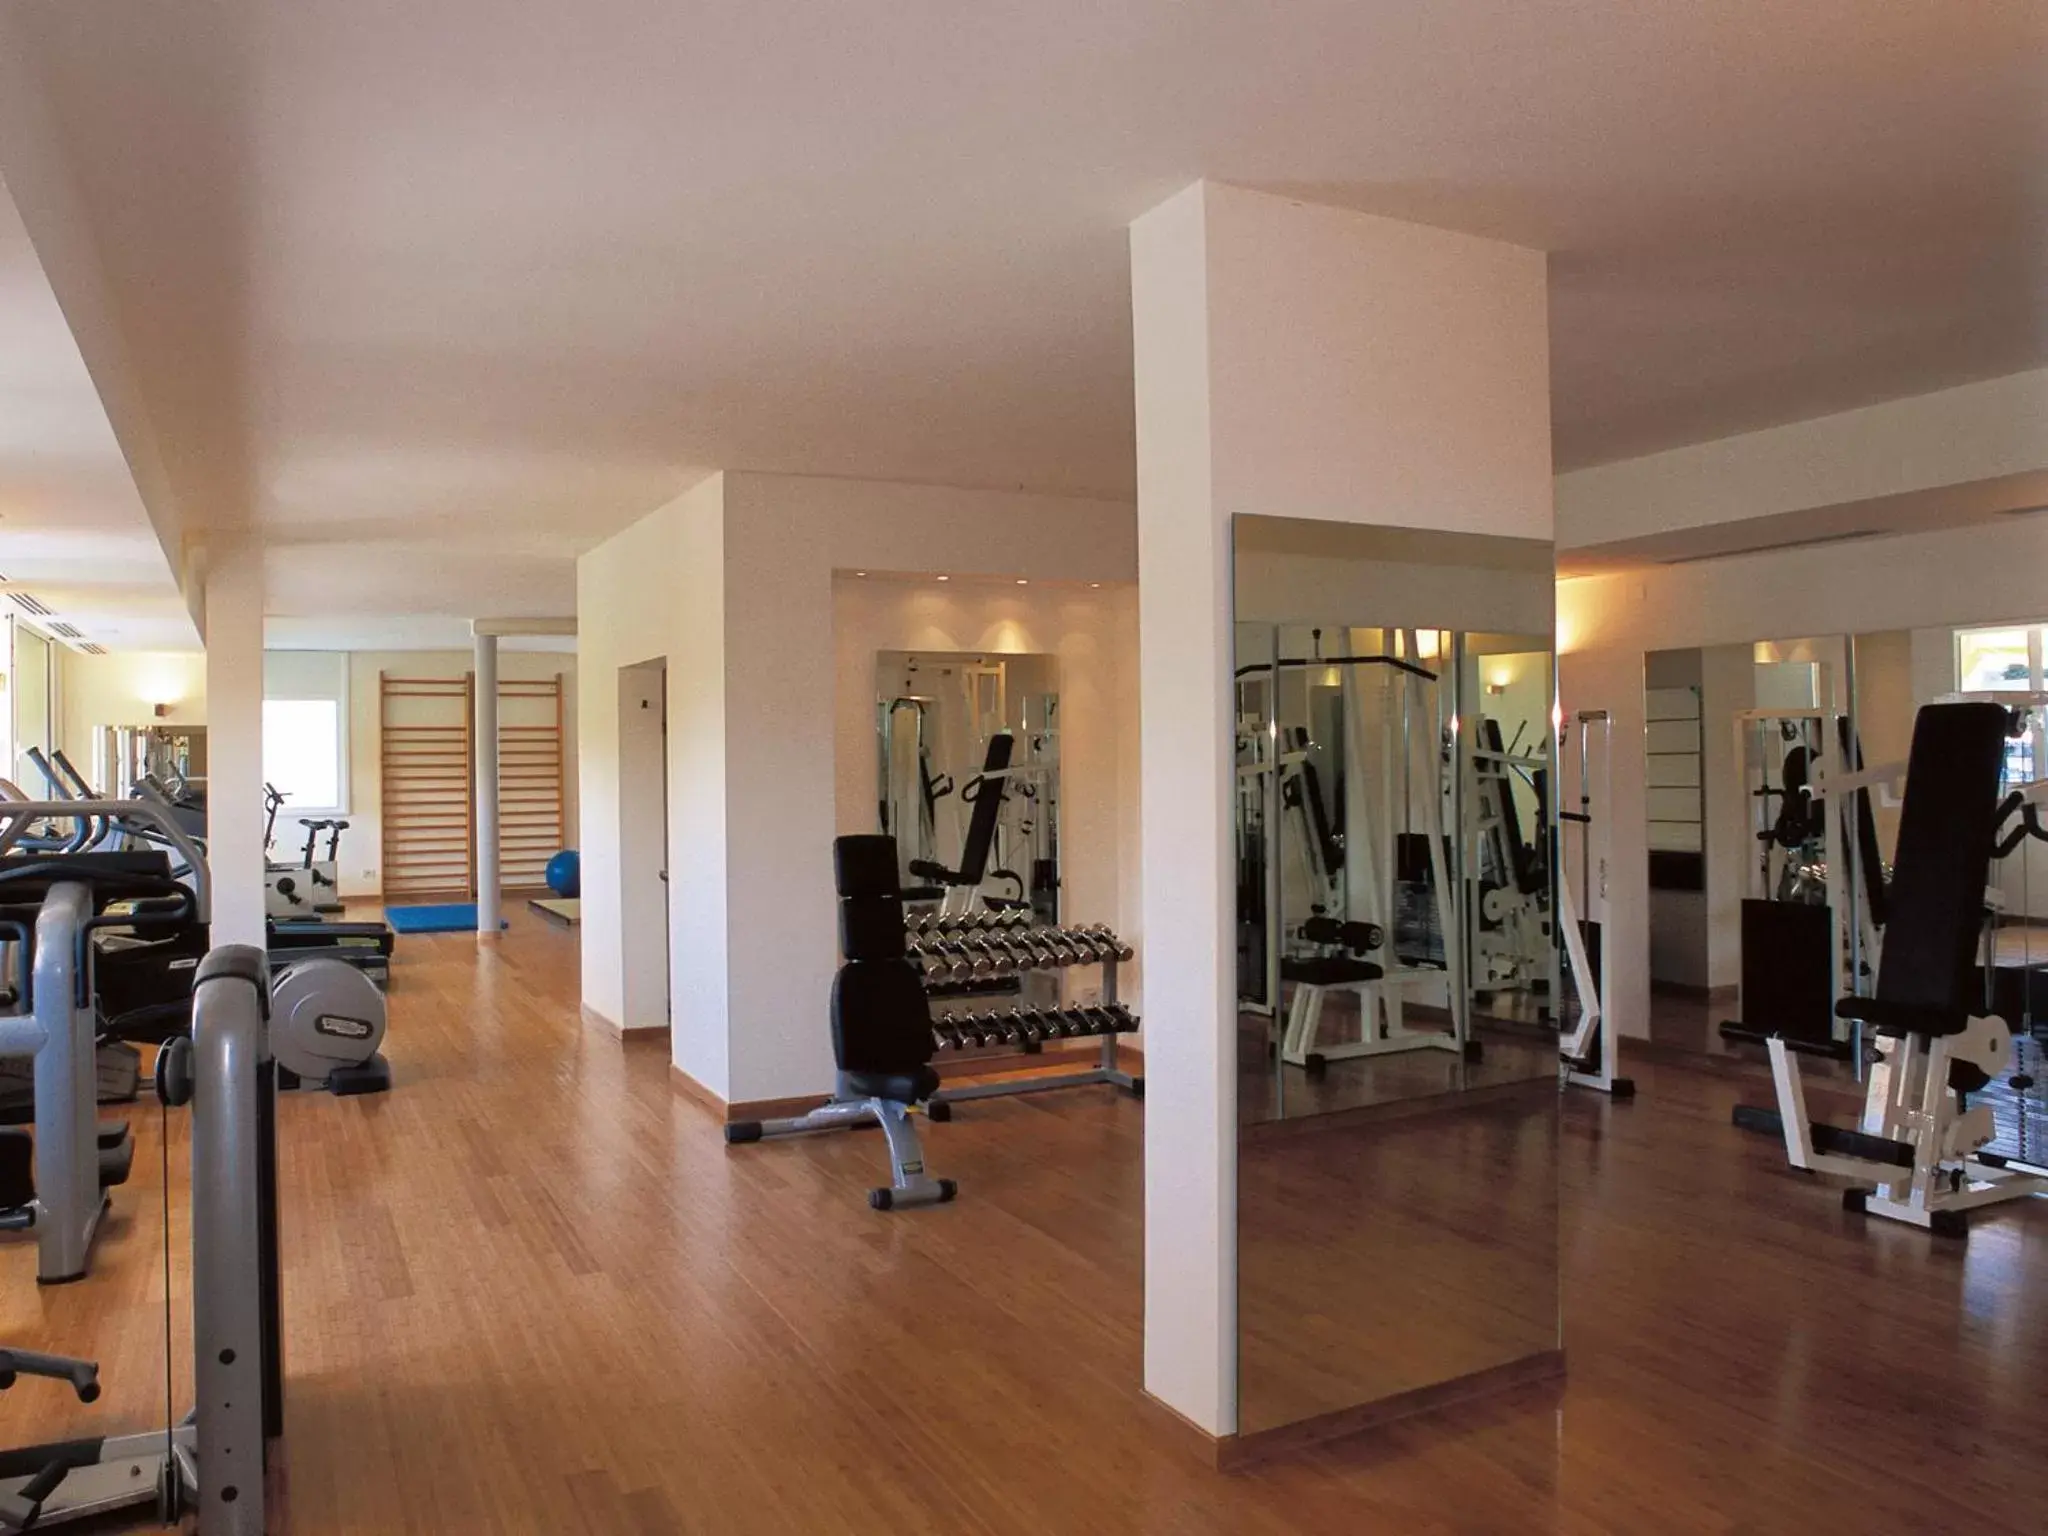 Fitness centre/facilities, Fitness Center/Facilities in Hotel Mioni Pezzato